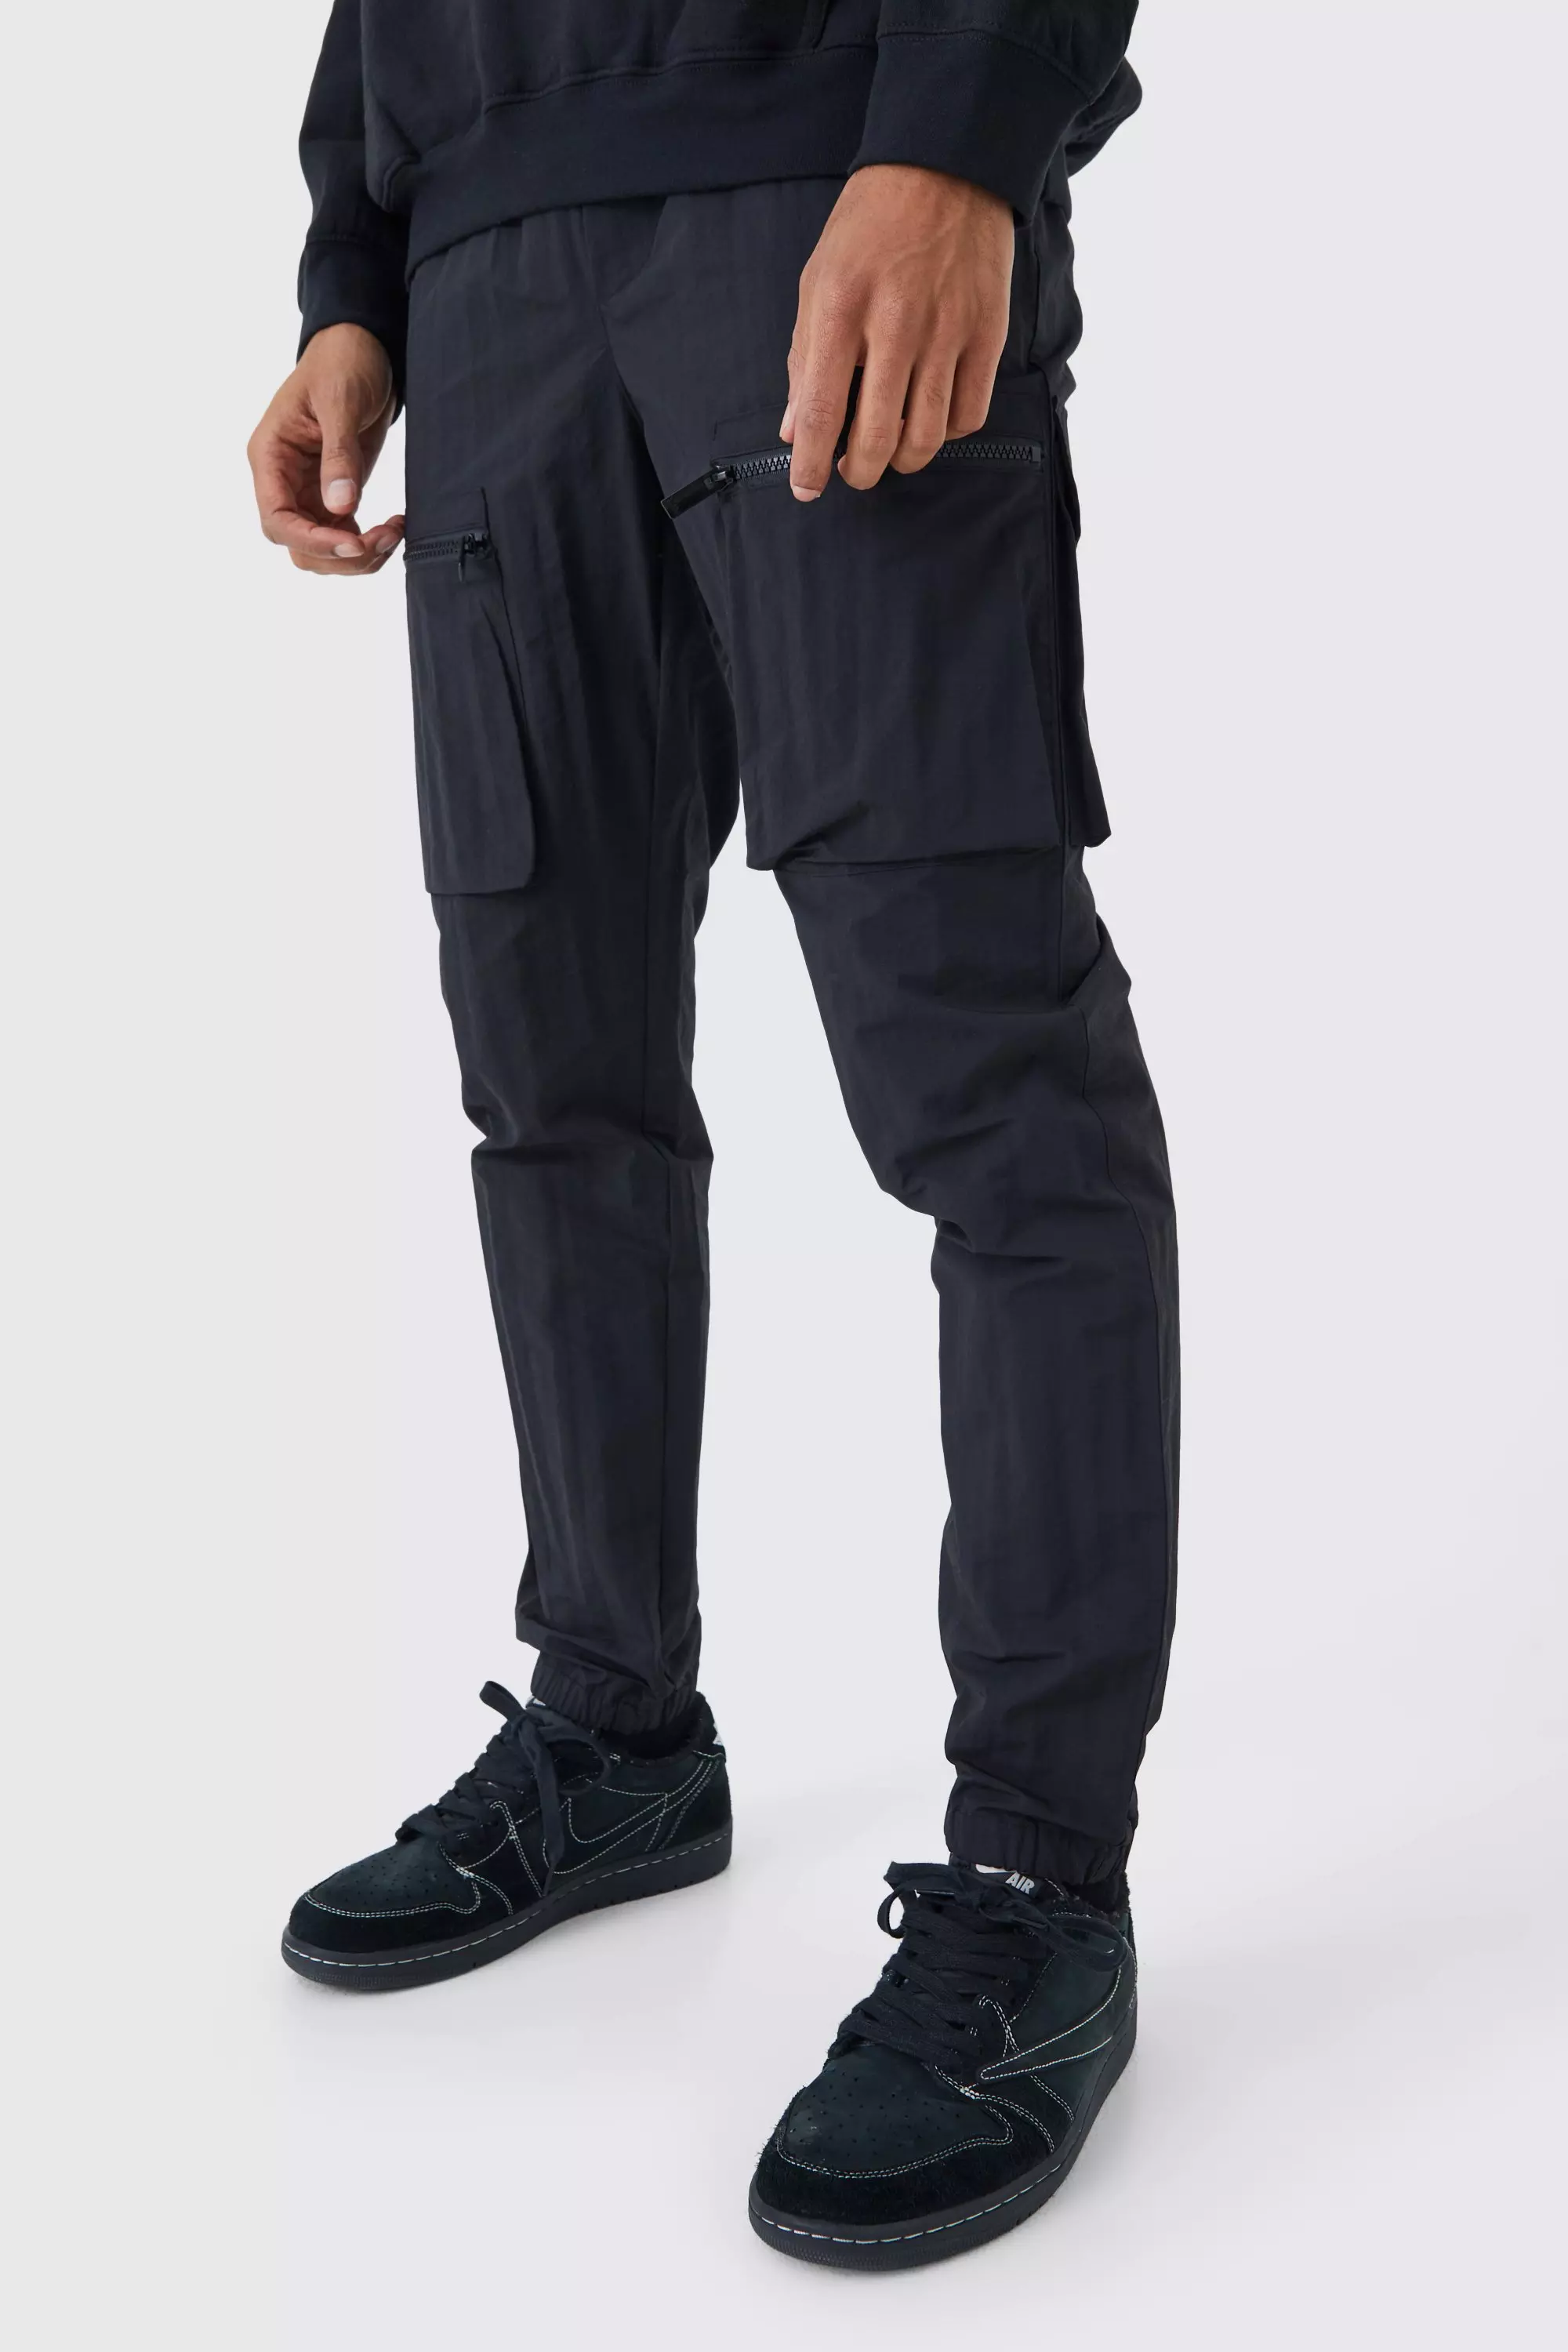 Elastic Waist Slim Fit Crinkle Nylon Cargo Trouser Black